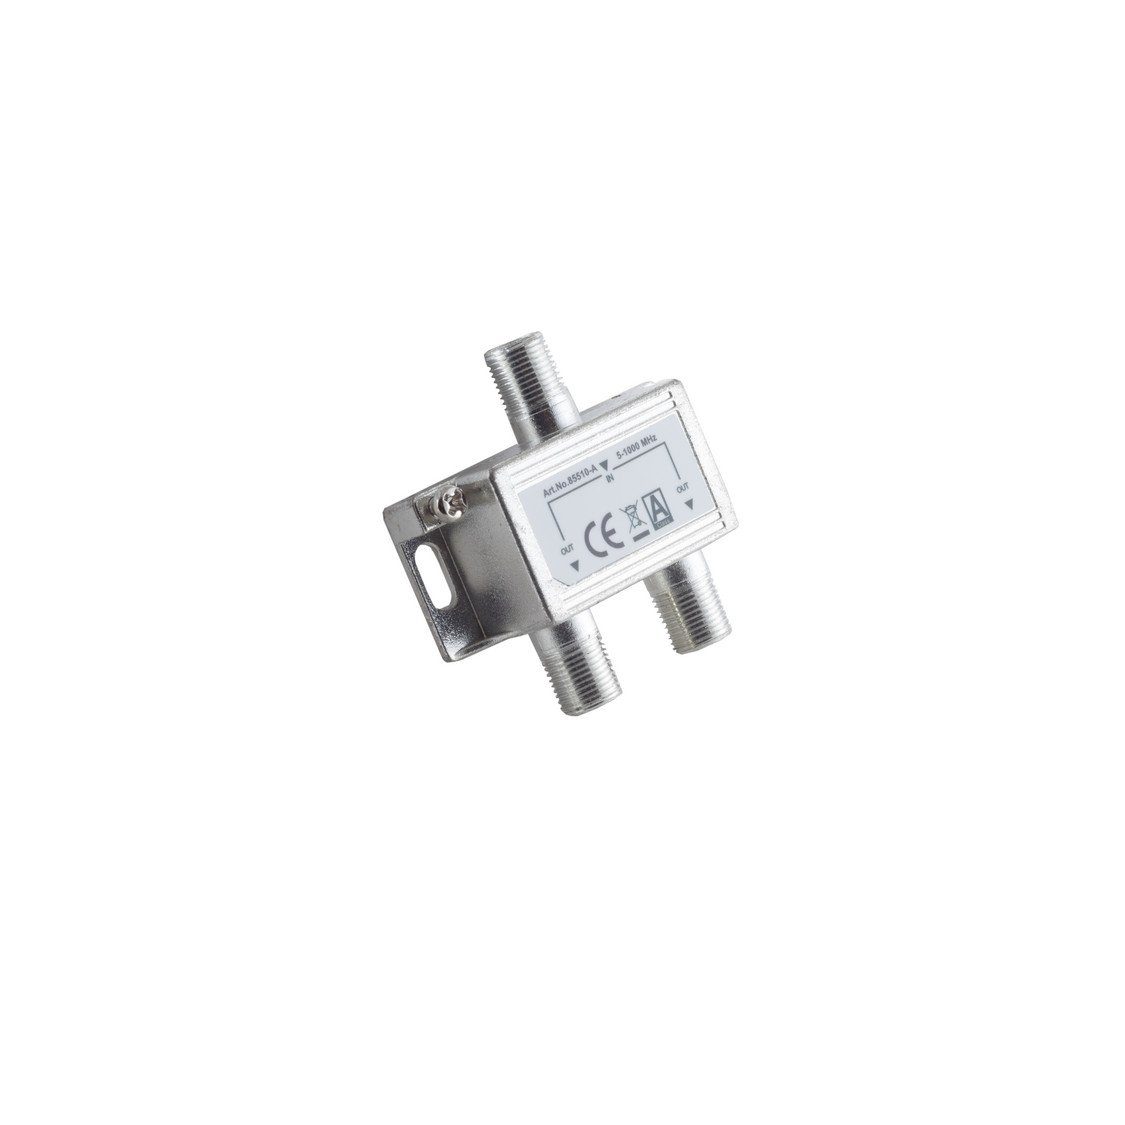 S/CONN maximum connectivity® Koax-Kabelverbinder F-Serie; Stammverteiler; 2-fach; 5-1000 MHz, 85 dB